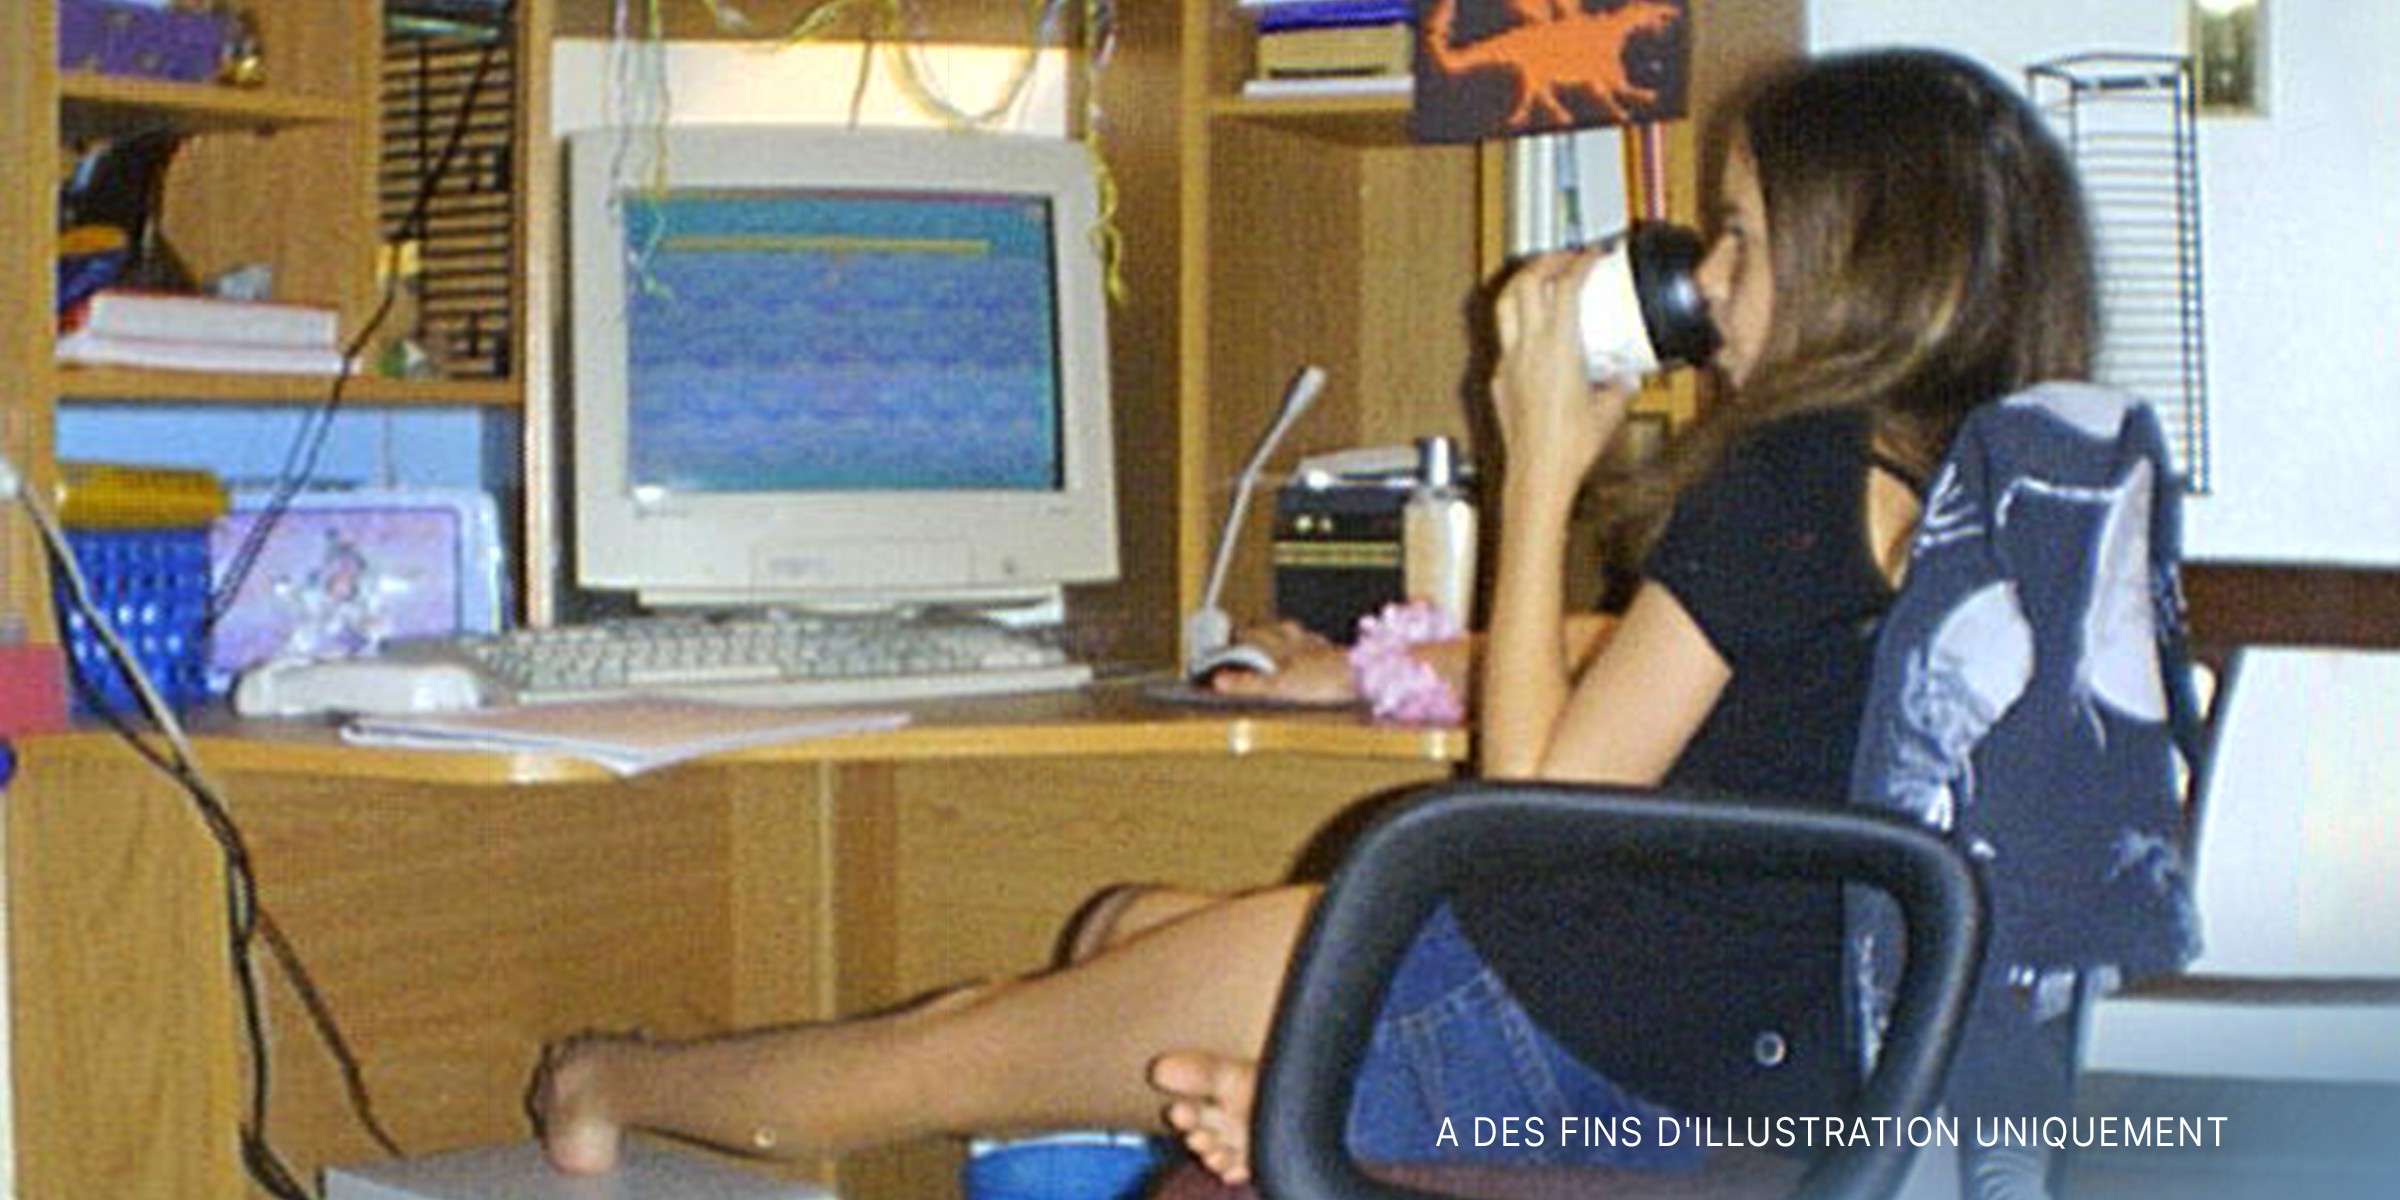 Adolescente sur l'ordinateur | Source : Flickr